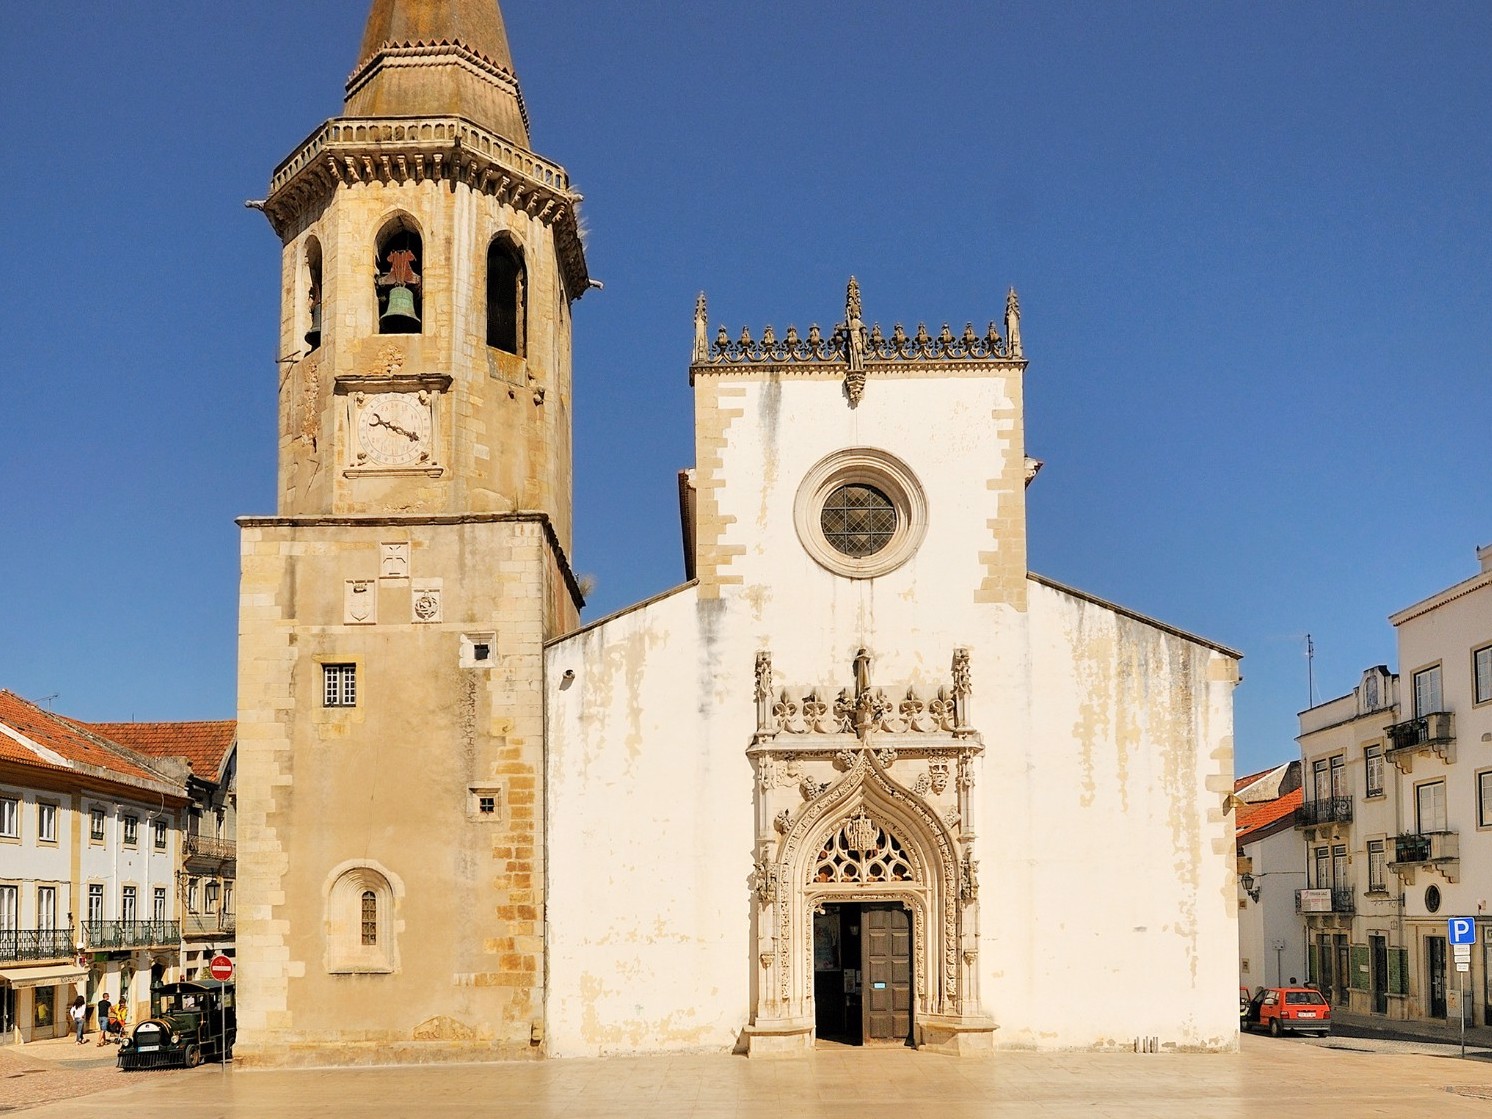 Igreja e torre - A Igreja apresenta uma planta retangular, estruturada em três naves e com uma torre sineira com um relógio do século XVI. Os seus portais são luxuosamente decorados ao estilo manuelino.